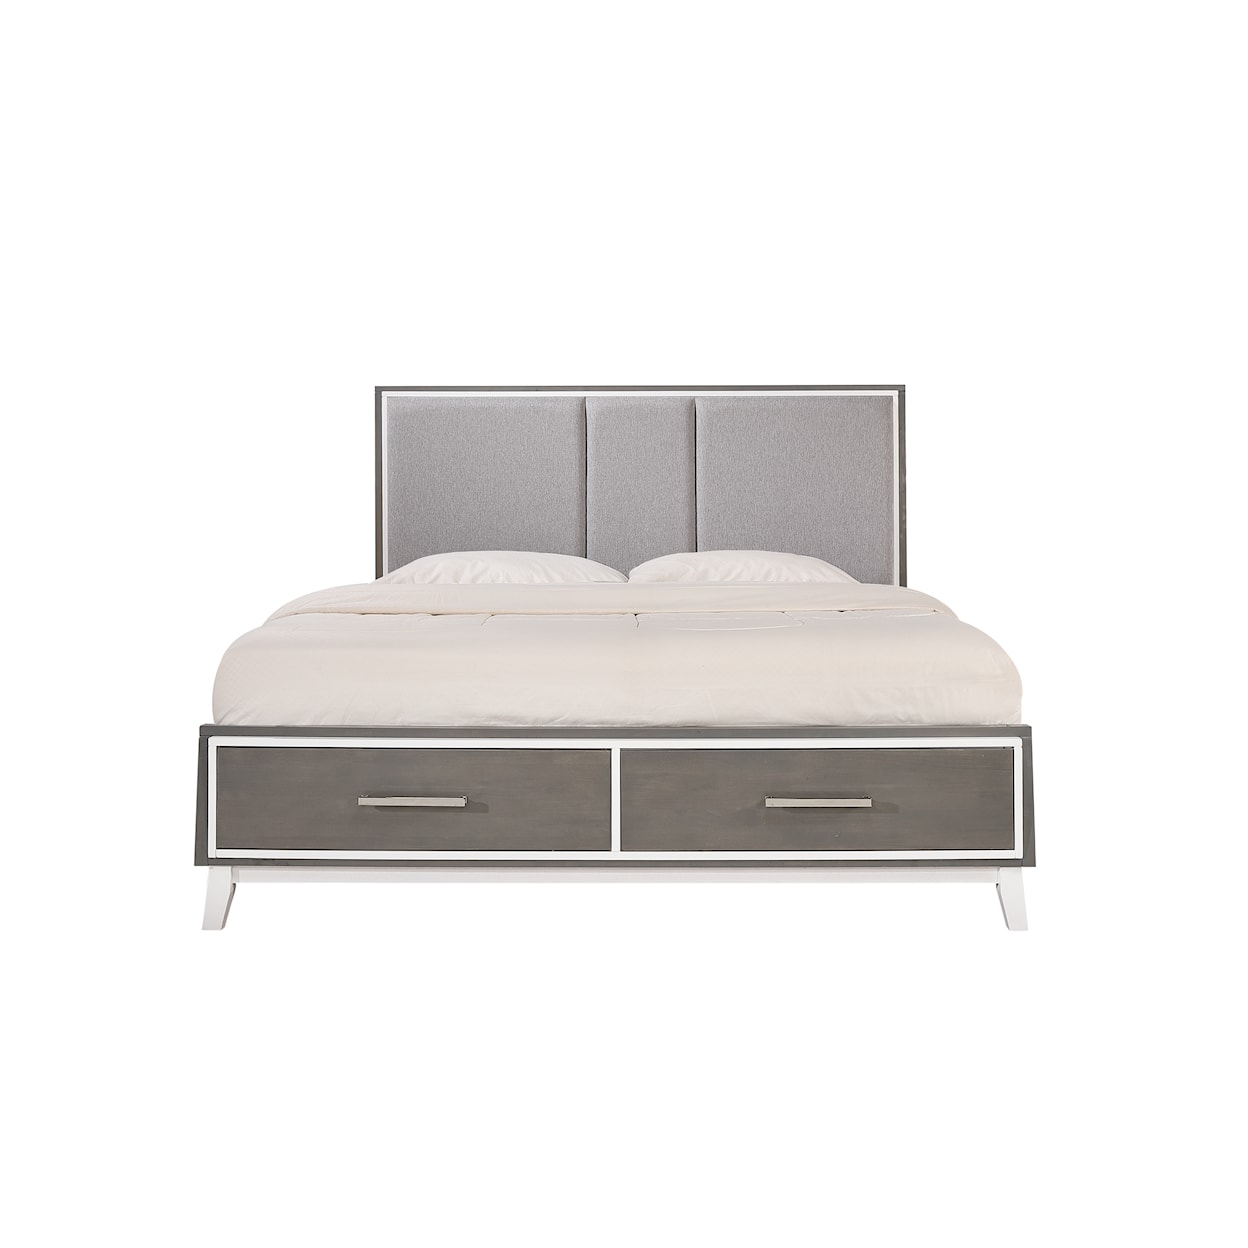 New Classic Furniture Zephyr Queen Bed